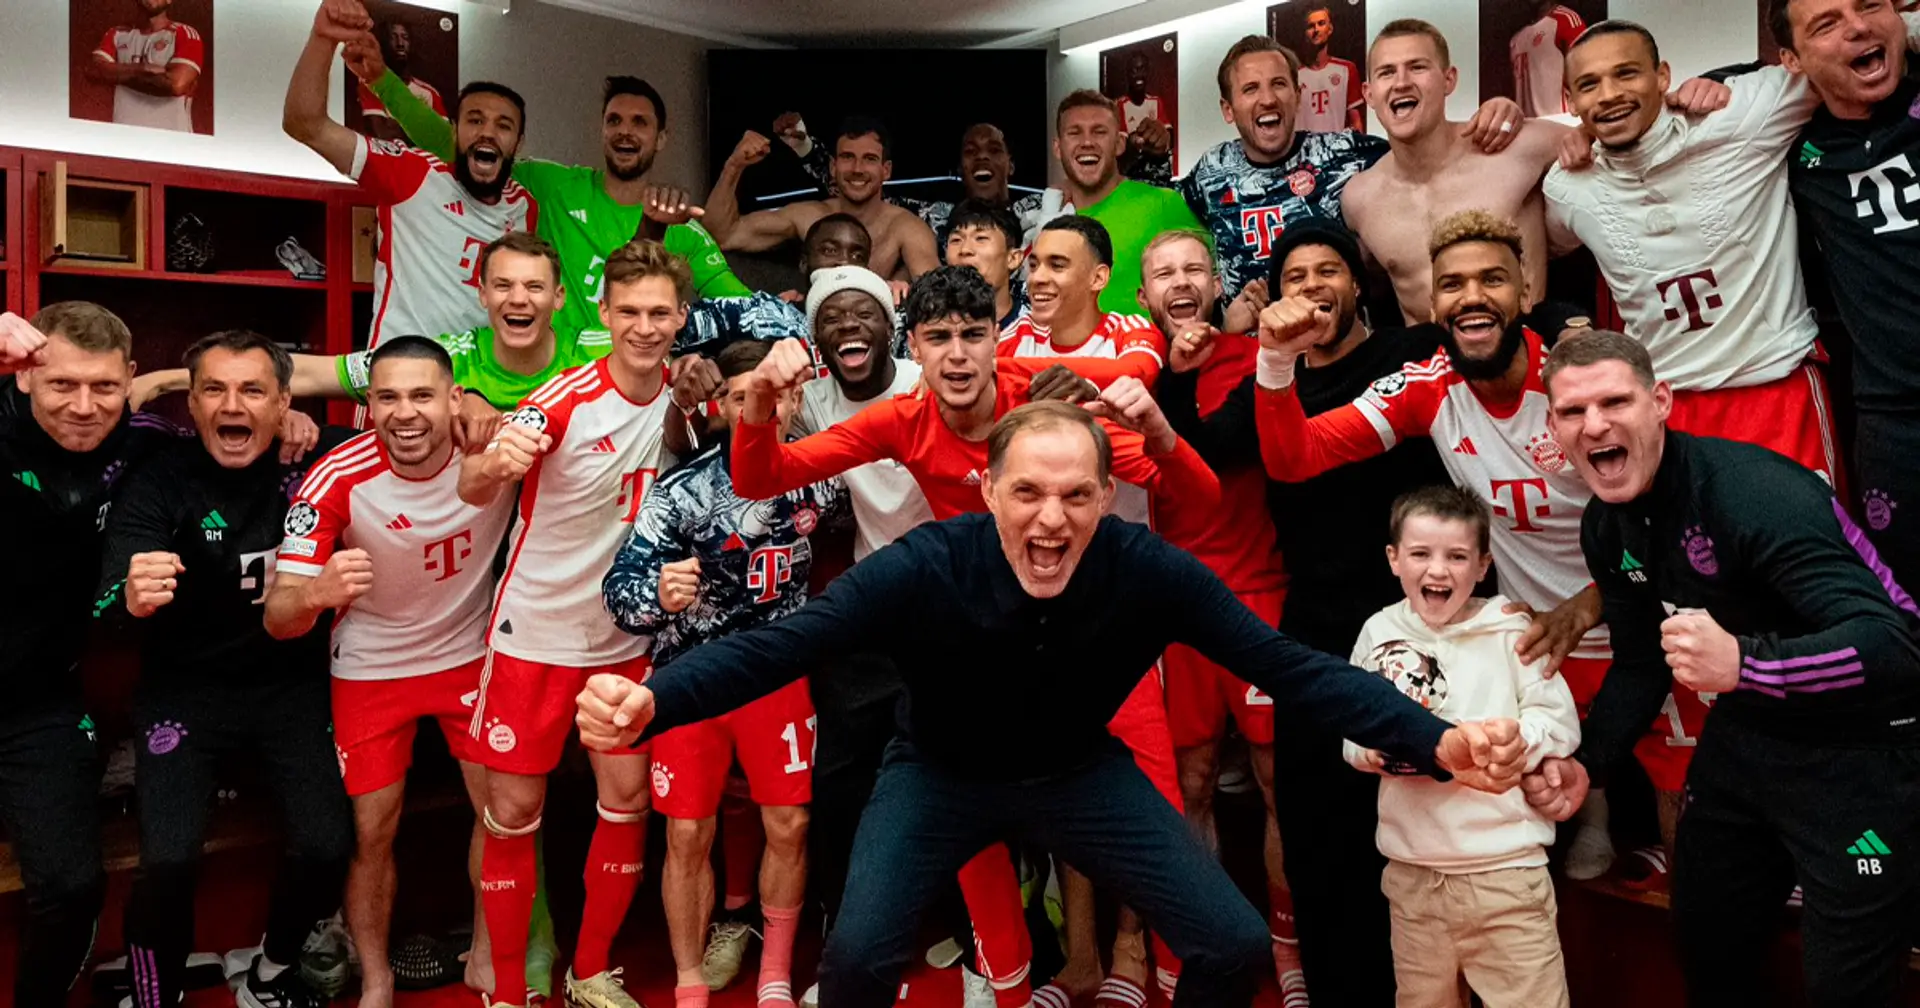 Matthäus traut Tuchel Champions-League-Sieg zu: "Jeder will den Titel, das eint Mannschaft und Trainer"